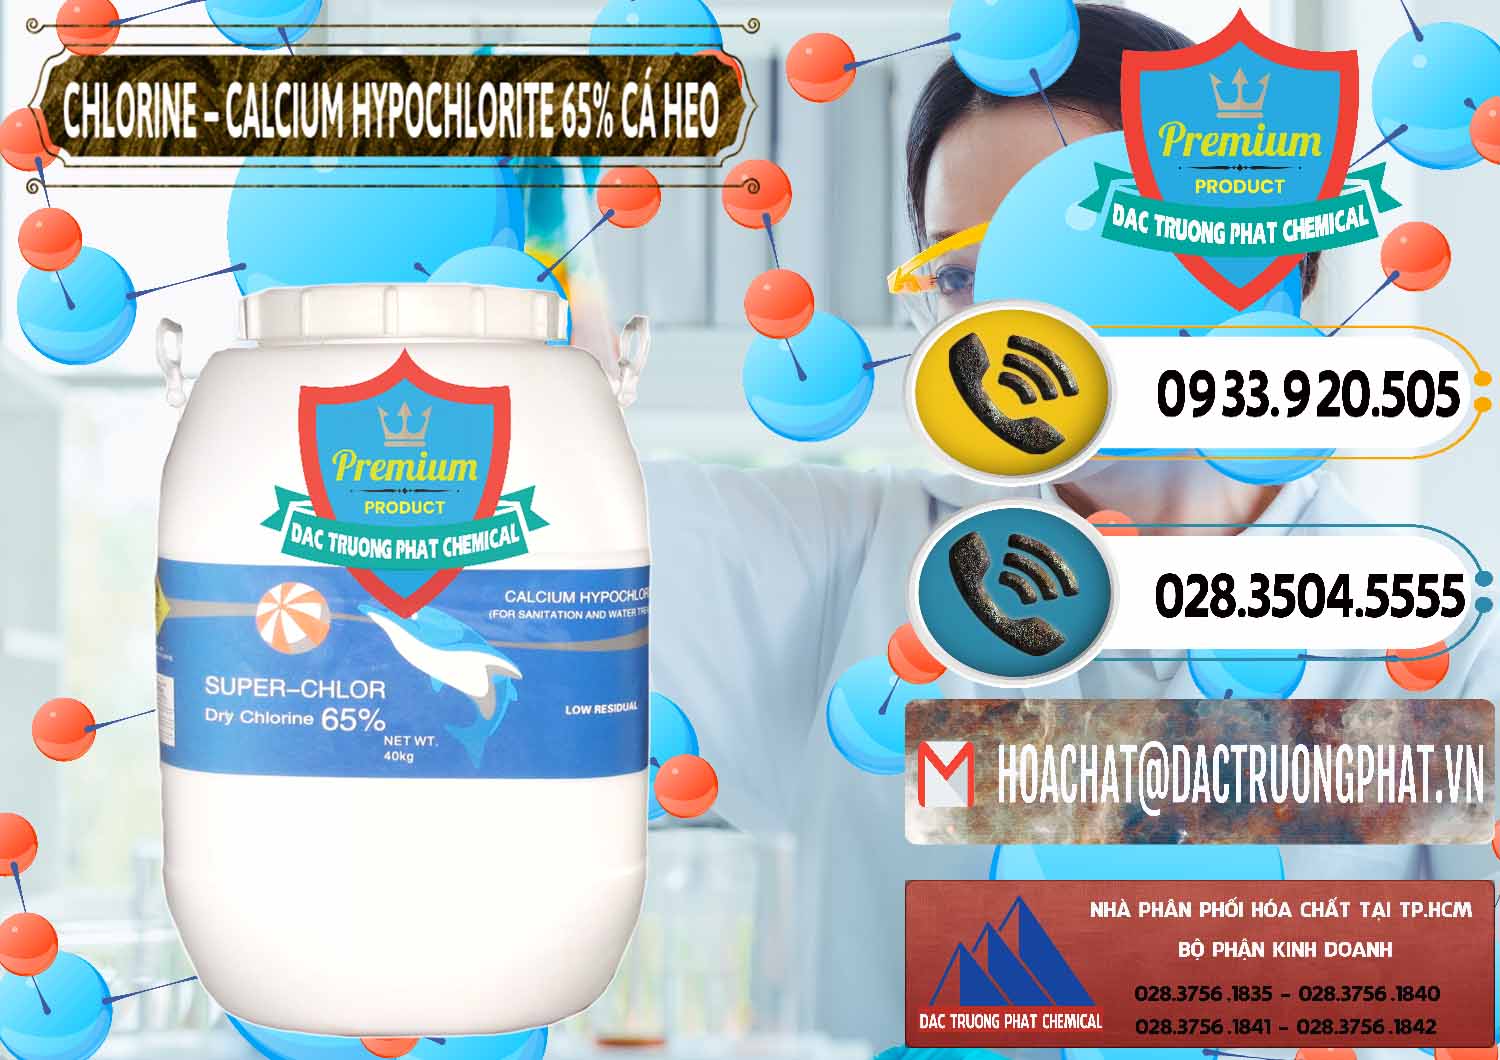 Cty chuyên phân phối và bán Clorin - Chlorine Cá Heo 65% Trung Quốc China - 0053 - Cty chuyên bán và cung cấp hóa chất tại TP.HCM - hoachatdetnhuom.vn